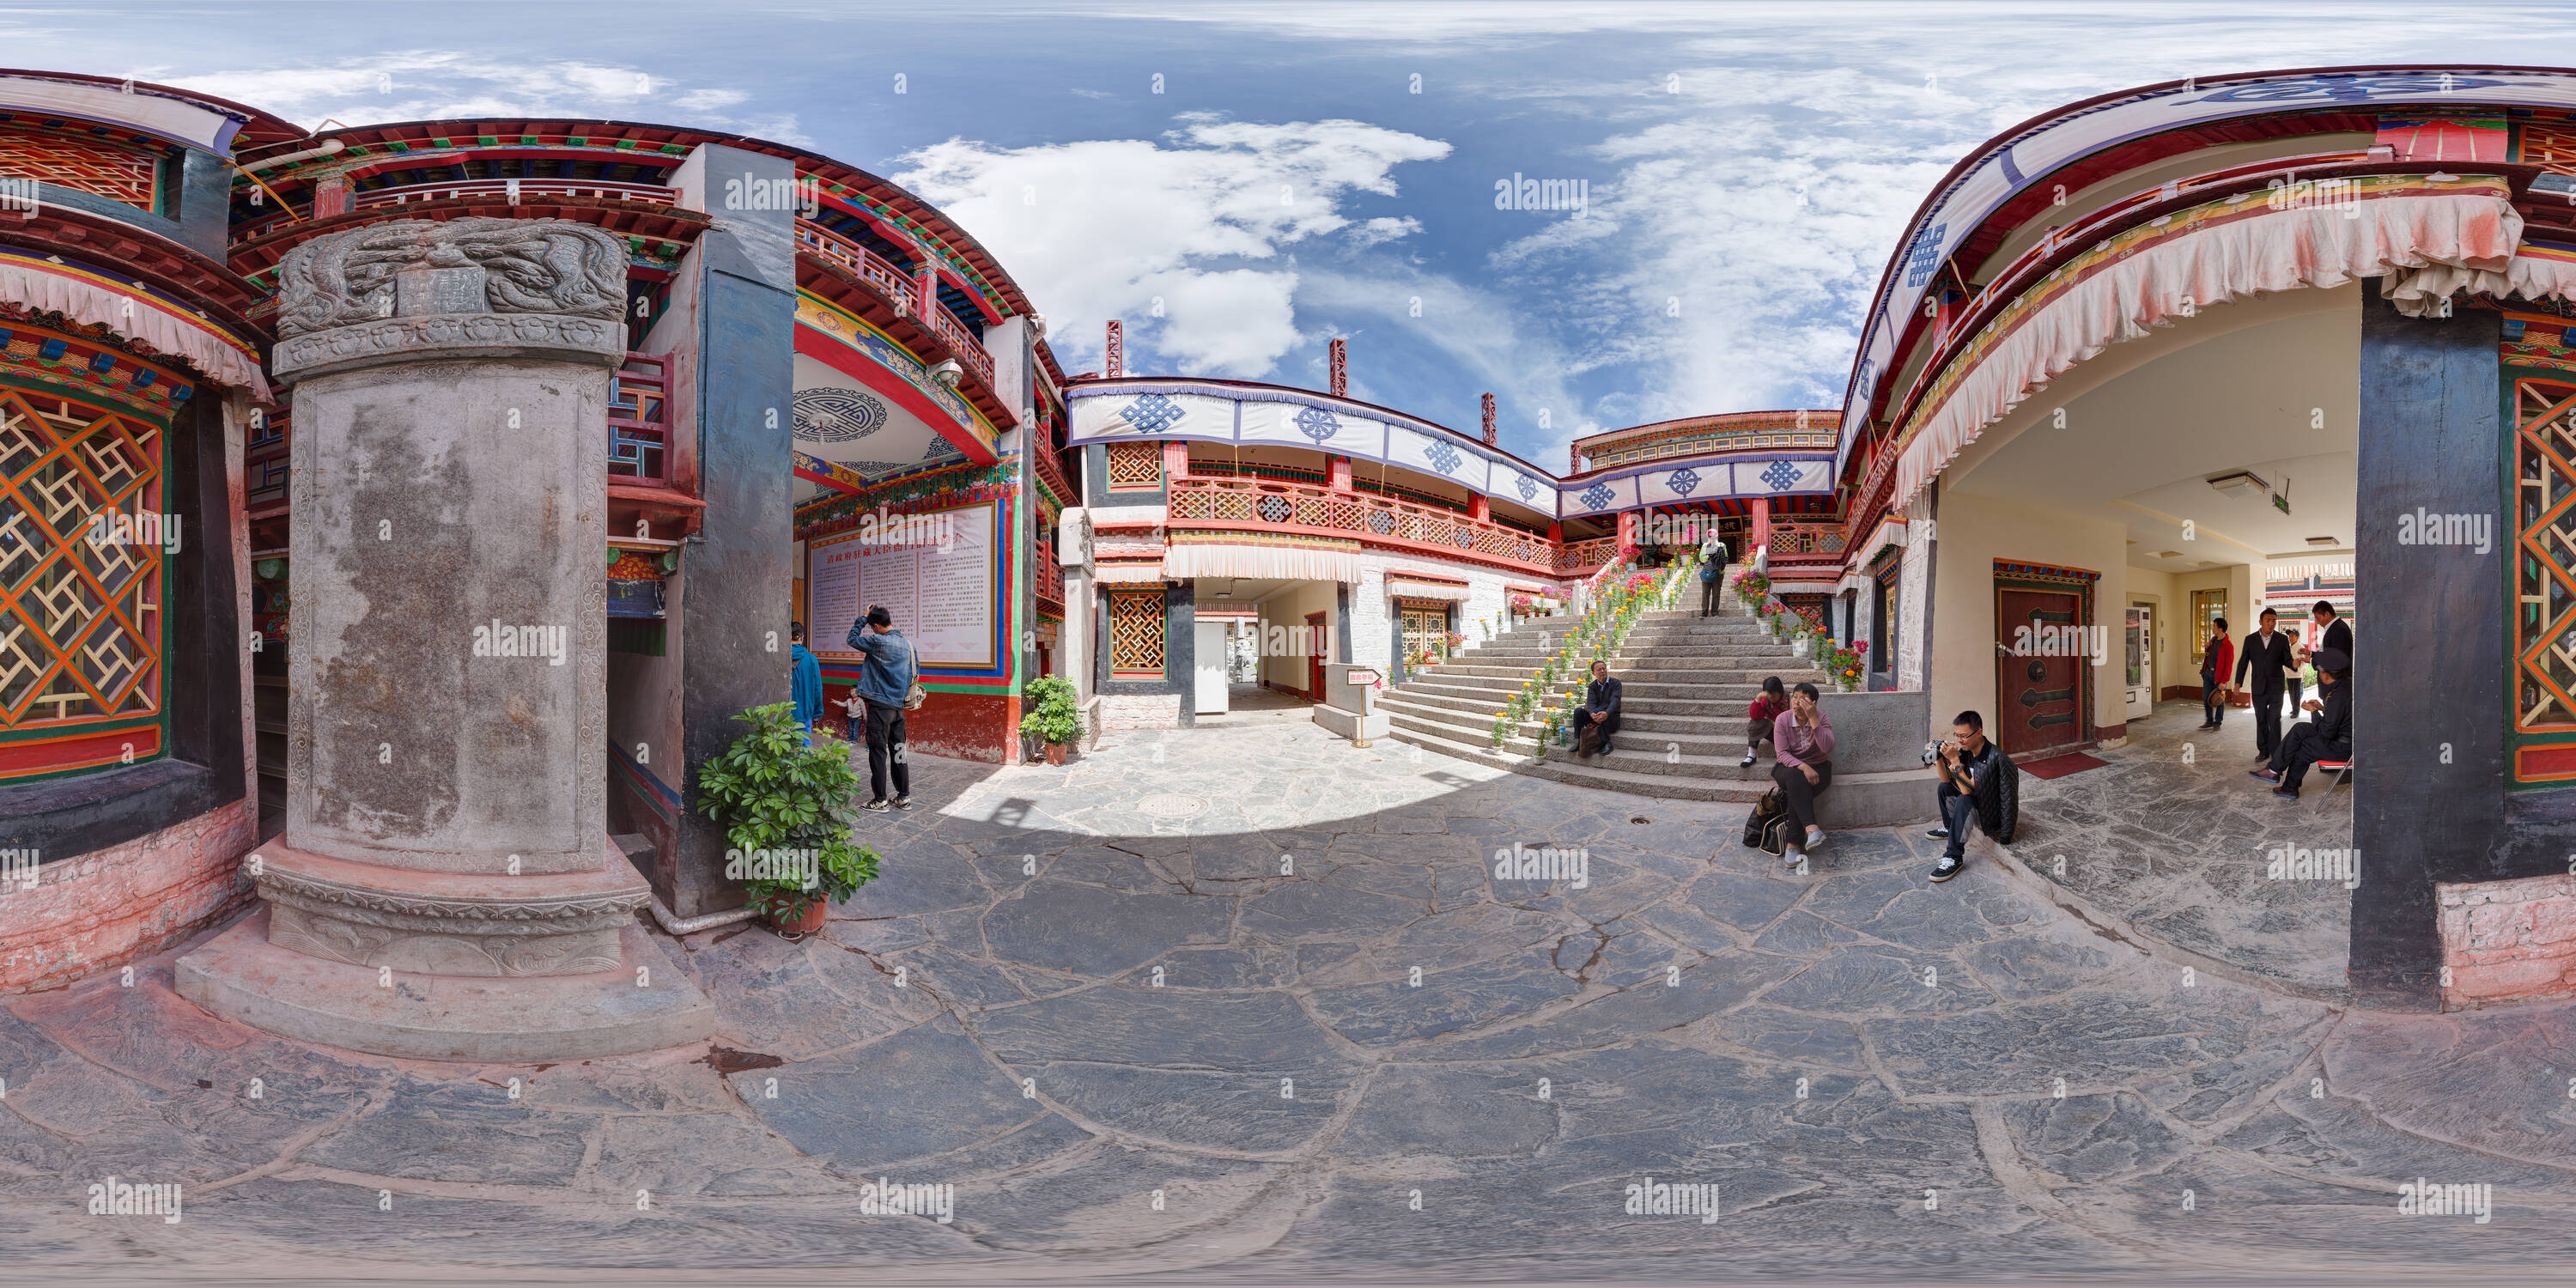 Visualizzazione panoramica a 360 gradi di Lhasa - La vecchia sede del governo Qing burocratico galleria Amban -18-2014